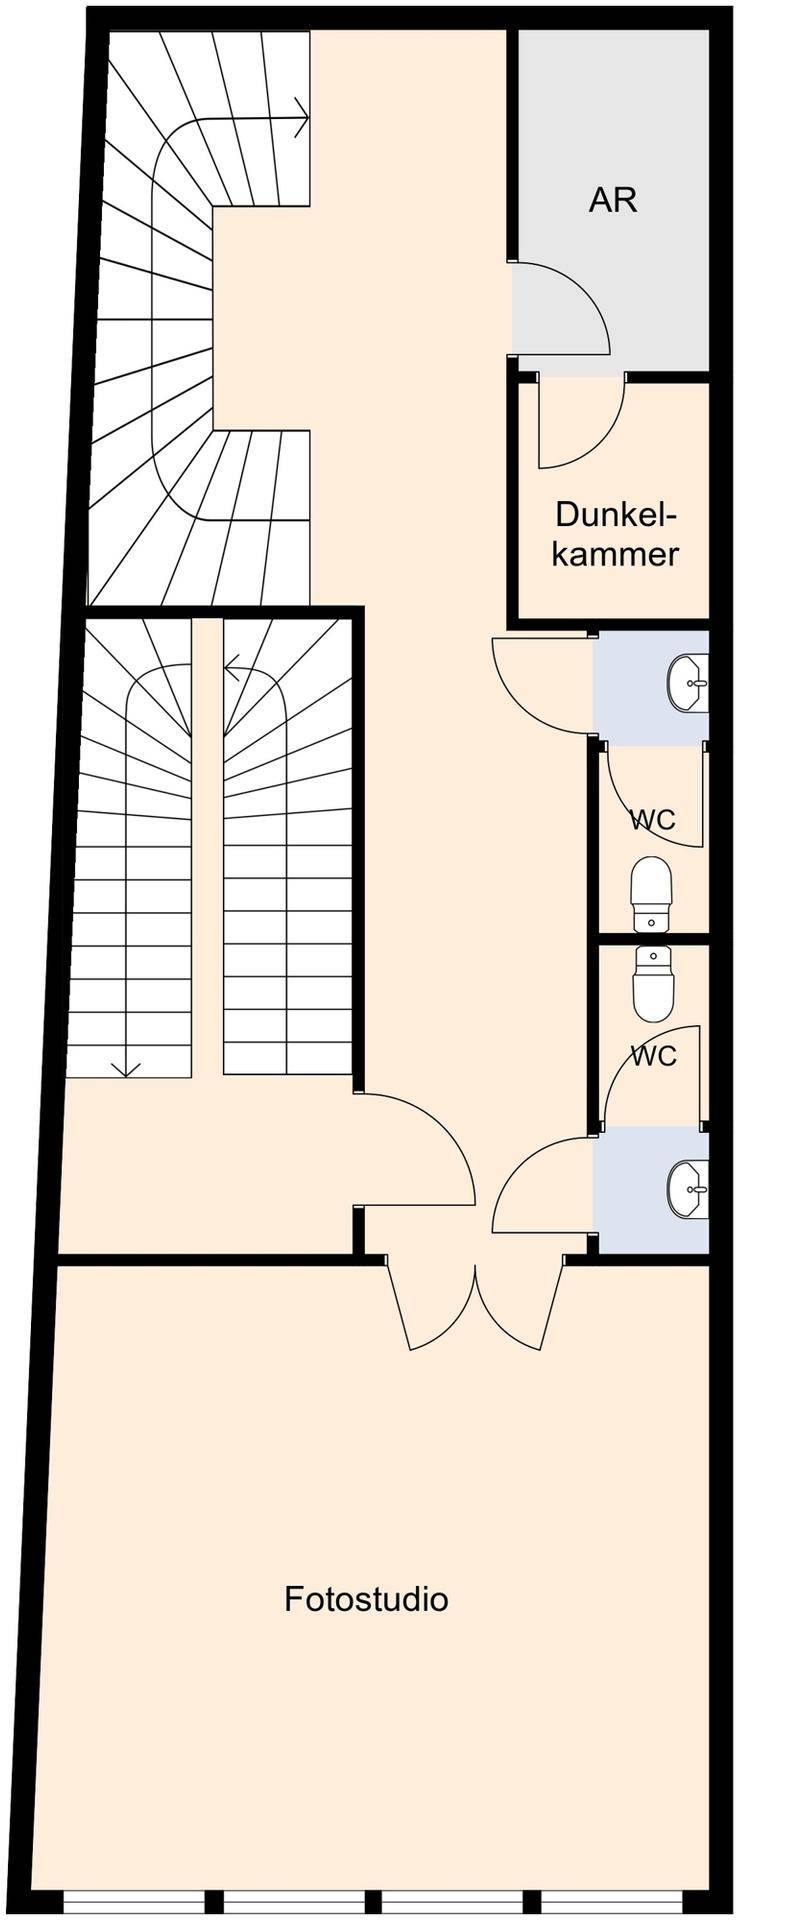 Grundriss 1. Obergeschoss ohne Maßstab